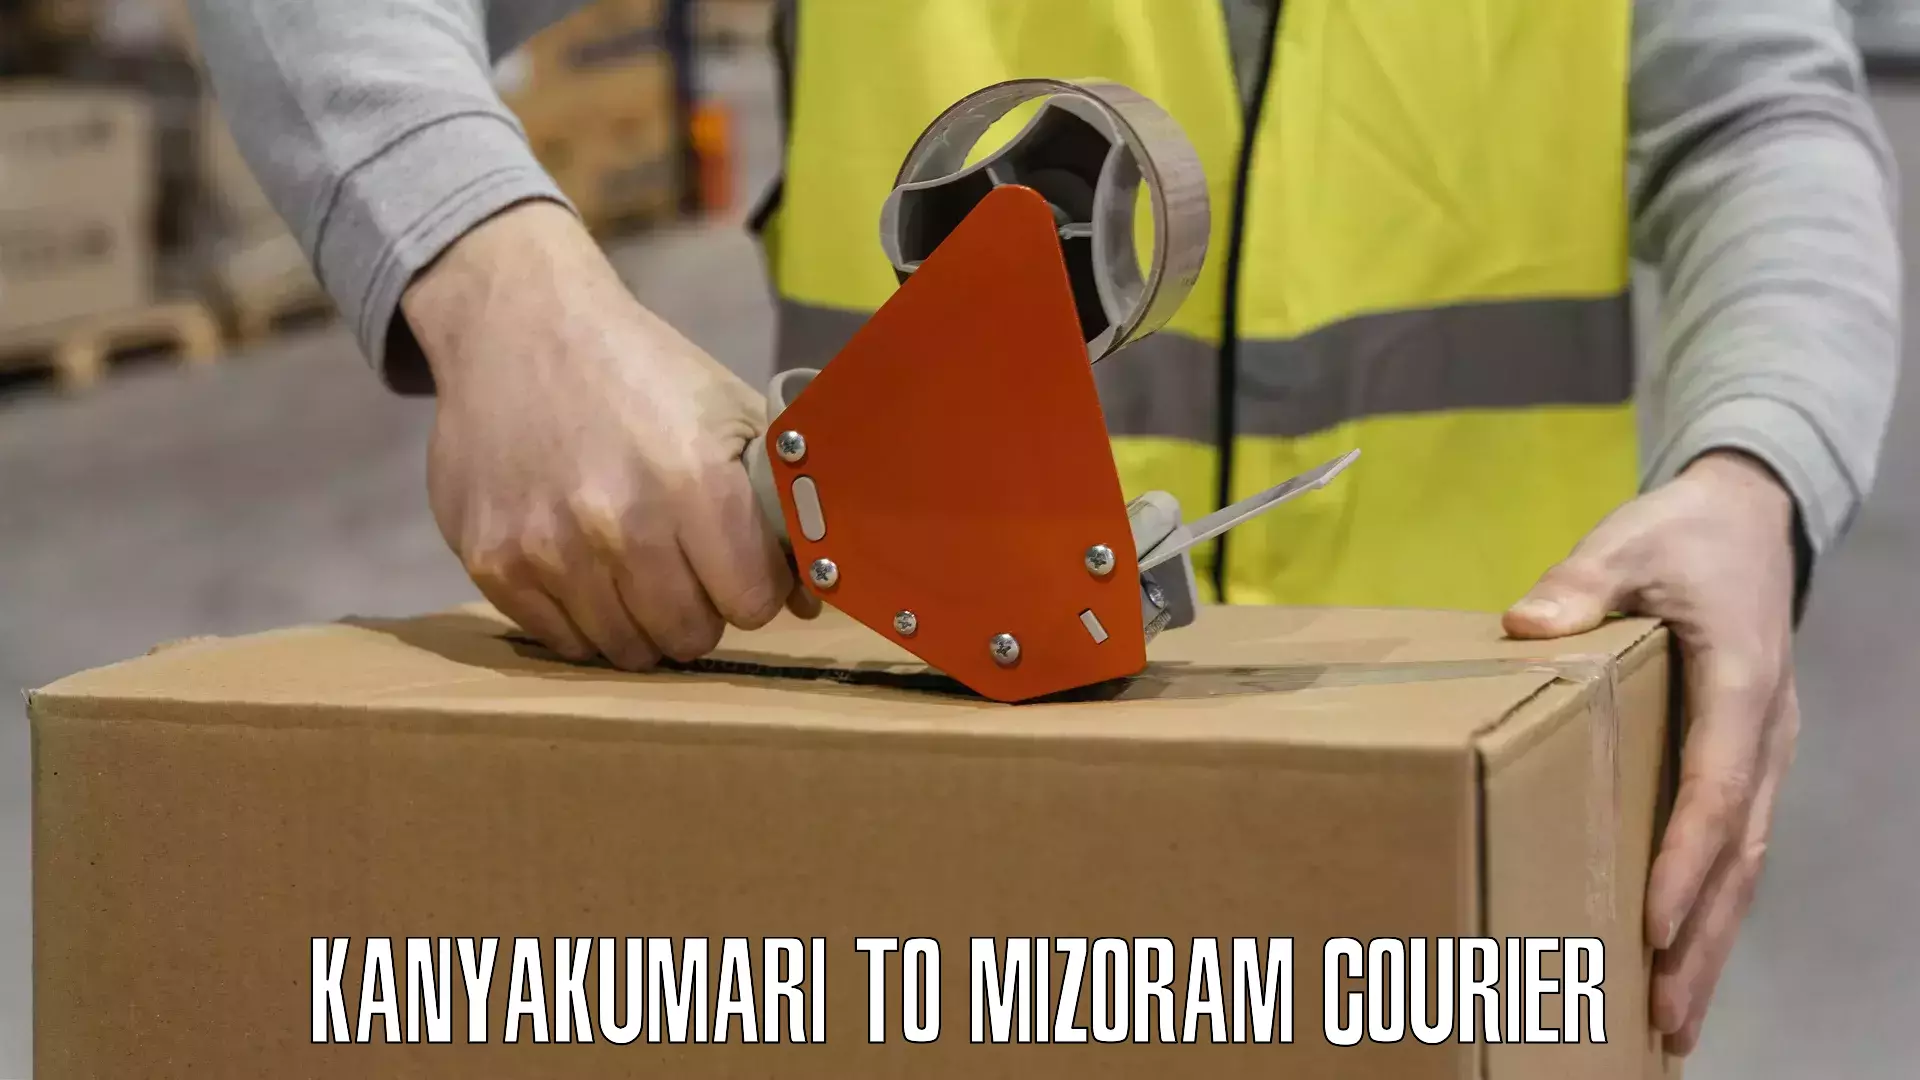 24-hour courier service Kanyakumari to Aizawl